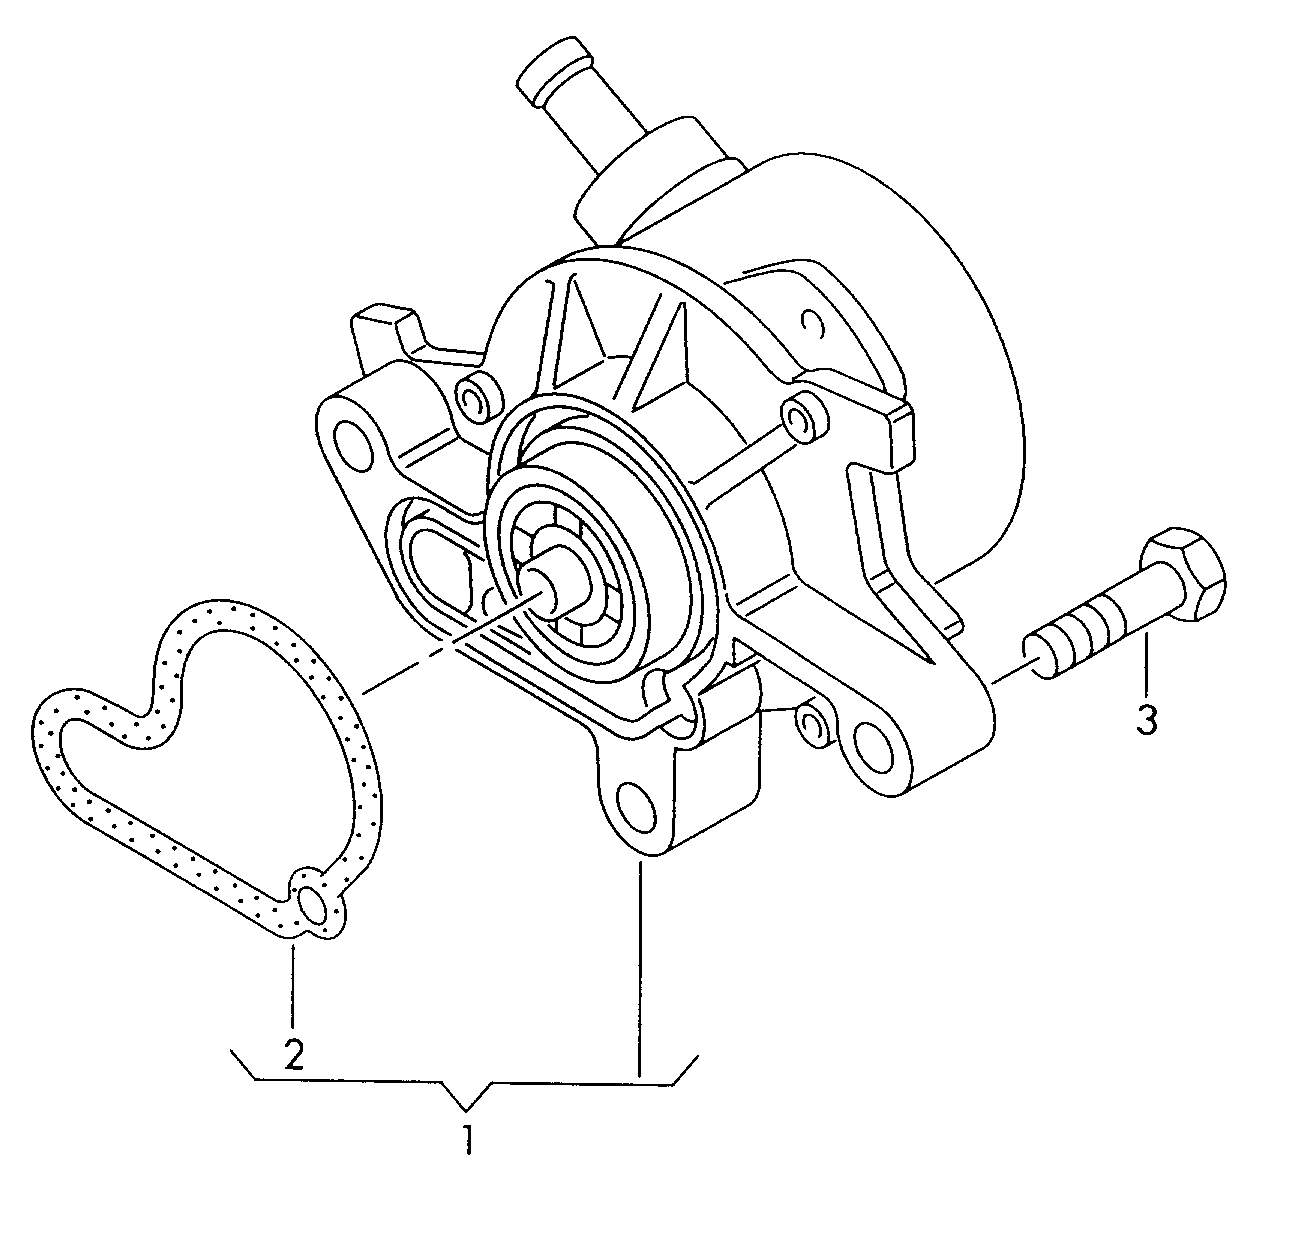 Vacuum pump 1.9ltr. - Beetle - be